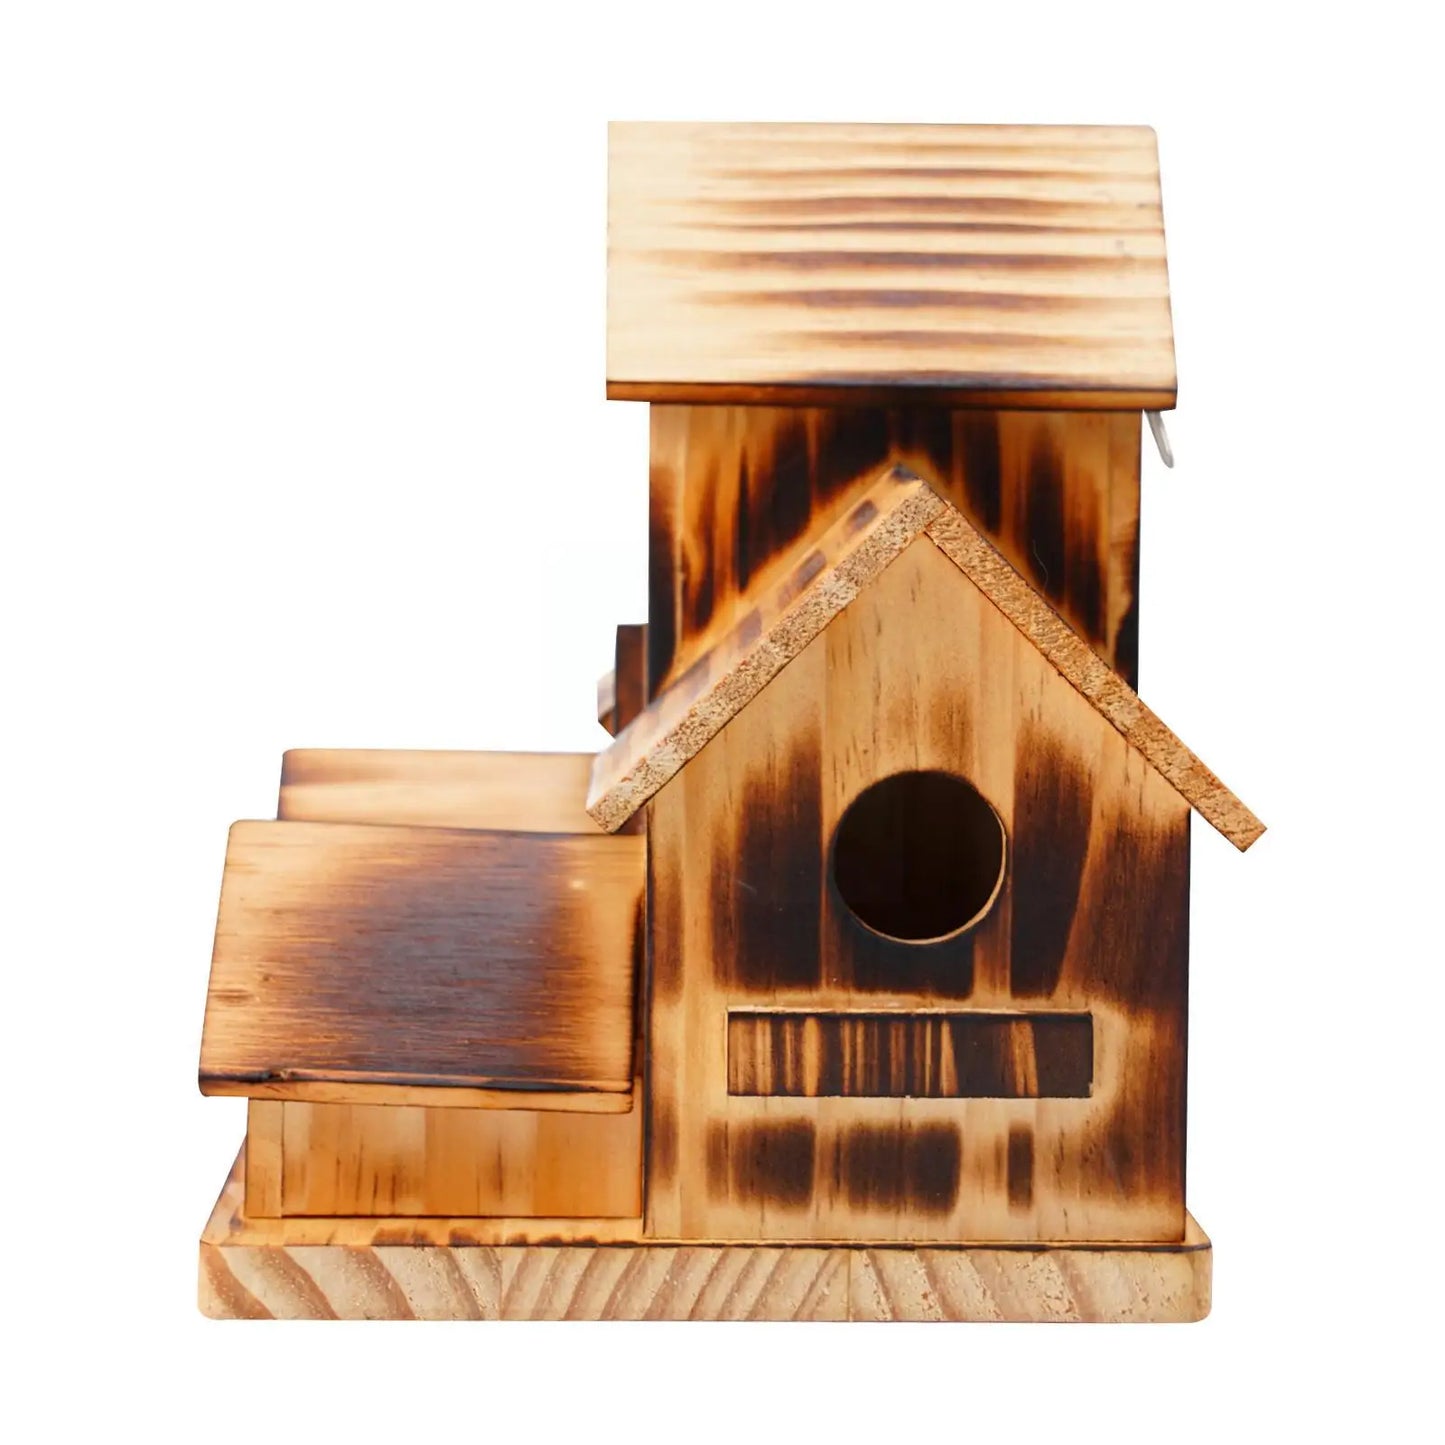 House de madera de pájaros Caza de pájaros Alimento de nido de pájaros decoración de la casa de pájaros Pargente de la cerca del patio trasero S3Q9